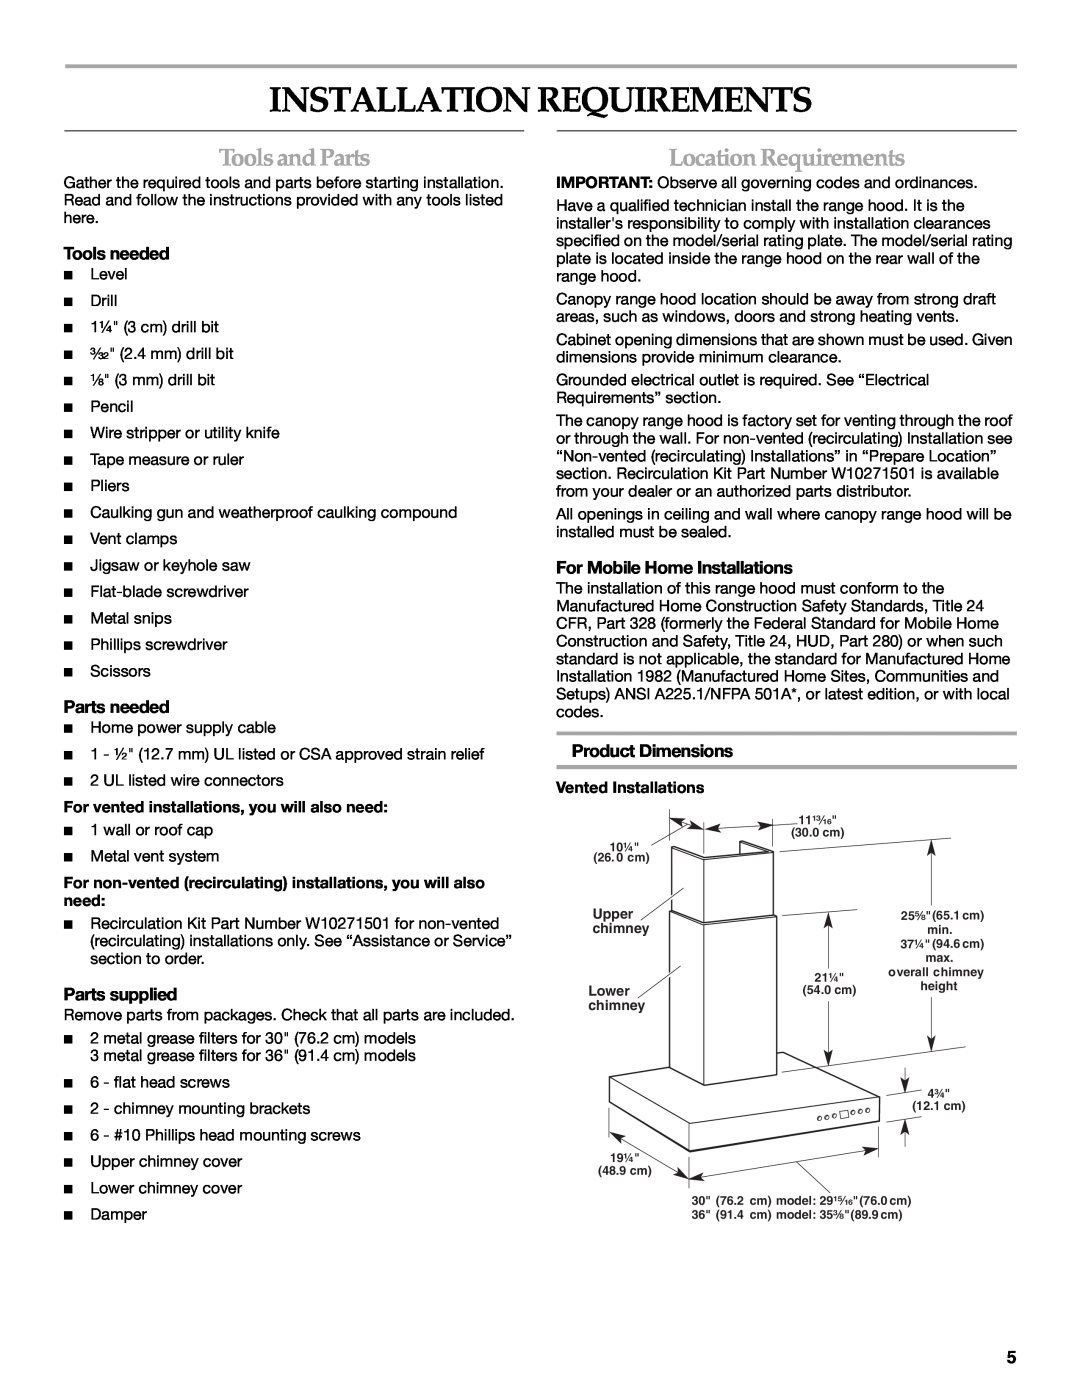 KitchenAid W10268948C Installation Requirements, ToolsandParts, Location Requirements, Tools needed, Parts needed 